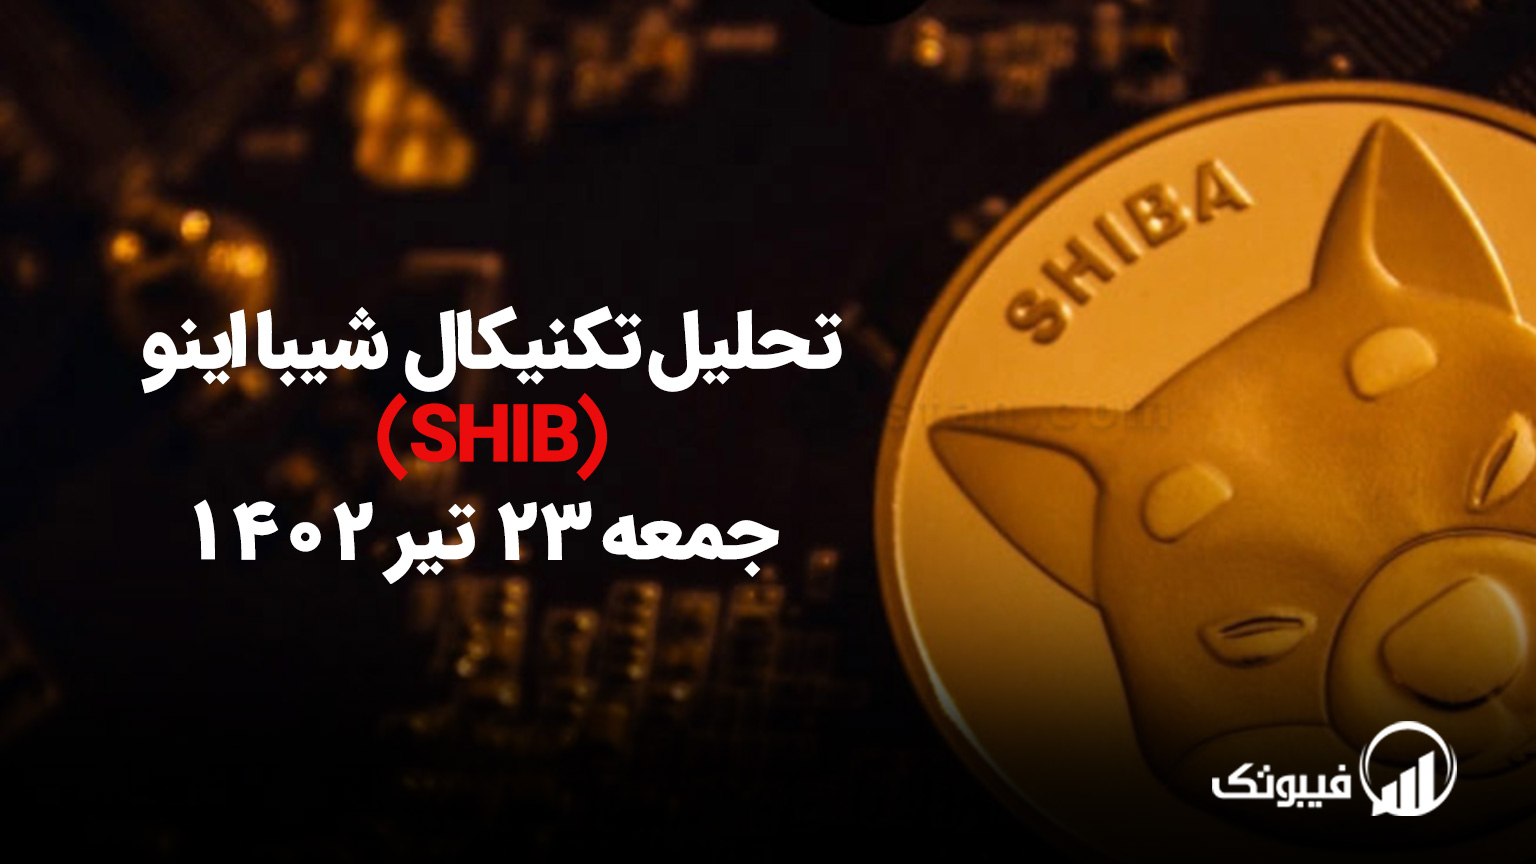 تحلیل تکنیکال شیبااینو (SHIB) - جمعه 23 تیر 1402